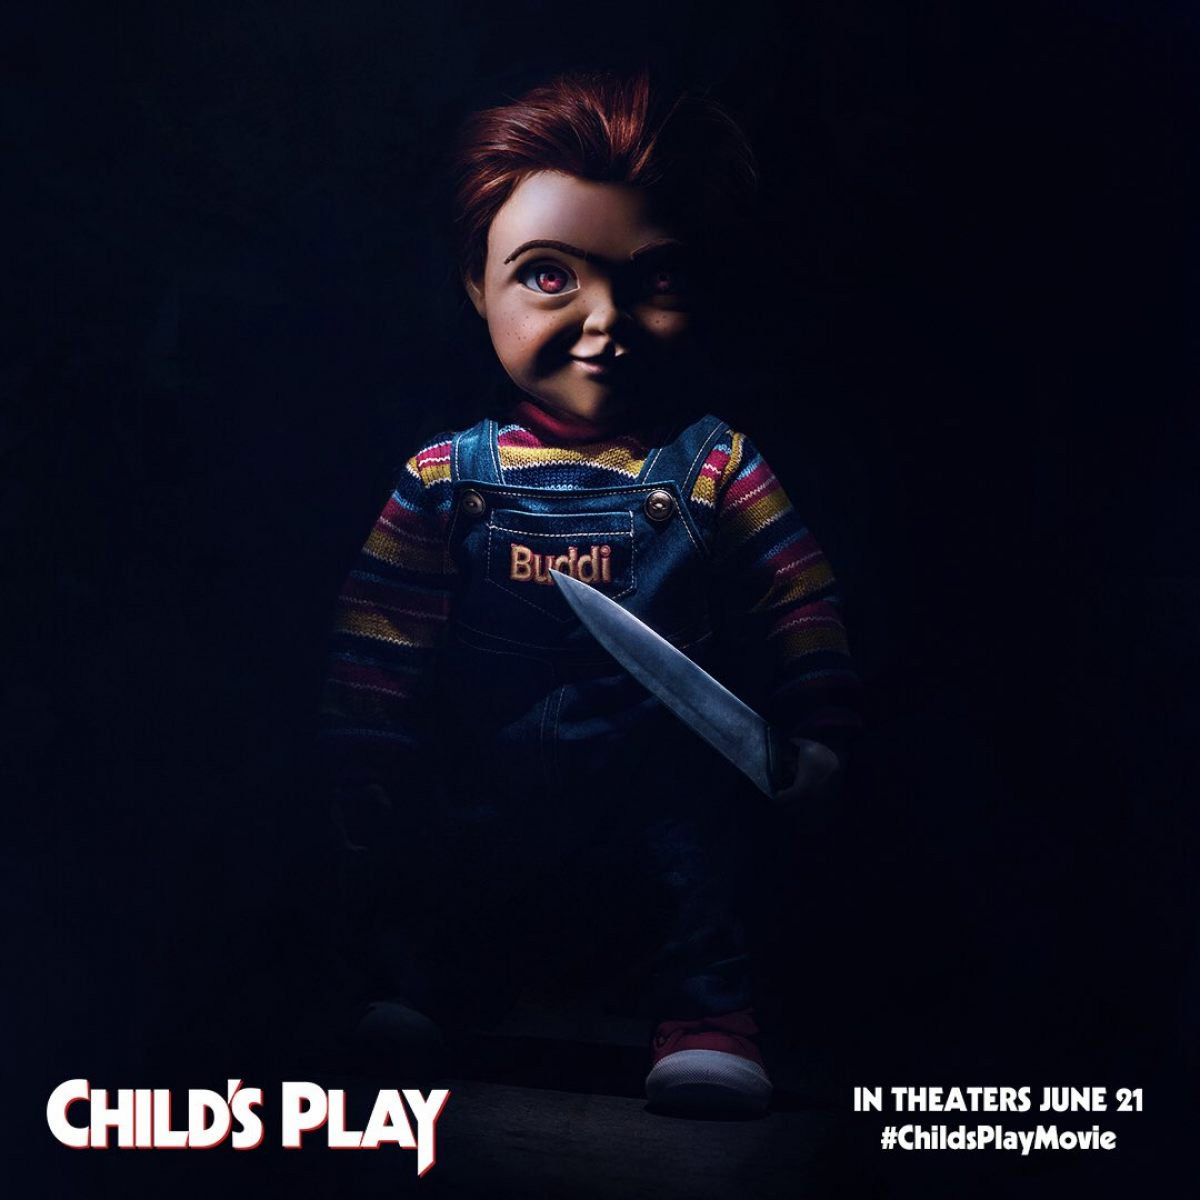 Primer vistazo más completo al nuevo Chucky de Child's Play